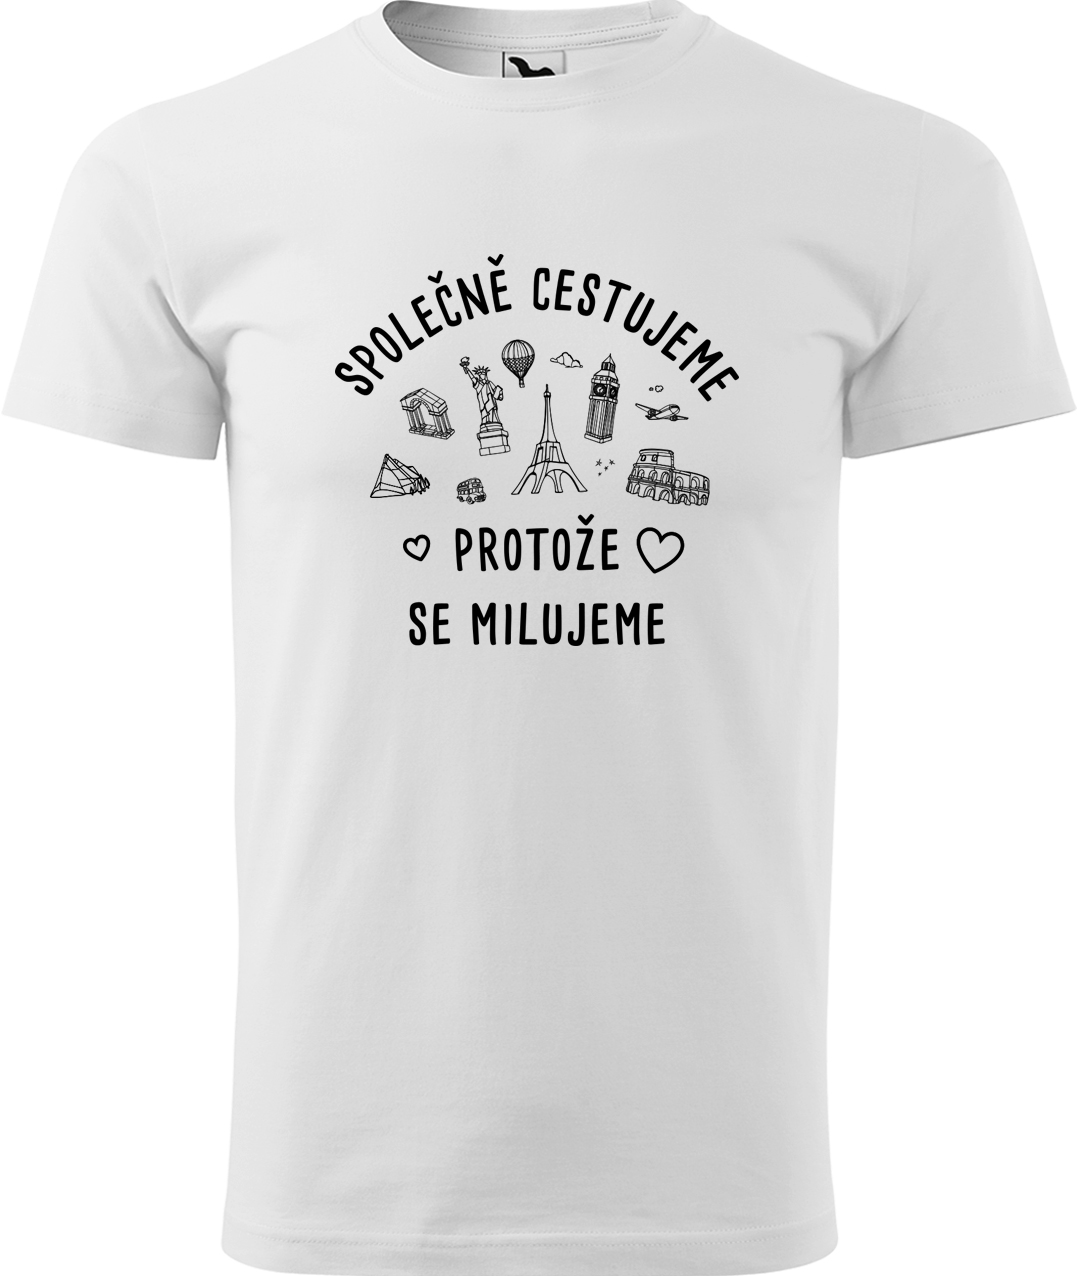 Pánské cestovatelské tričko - Společně cestujeme protože se milujeme Velikost: L, Barva: Bílá (00), Střih: pánský